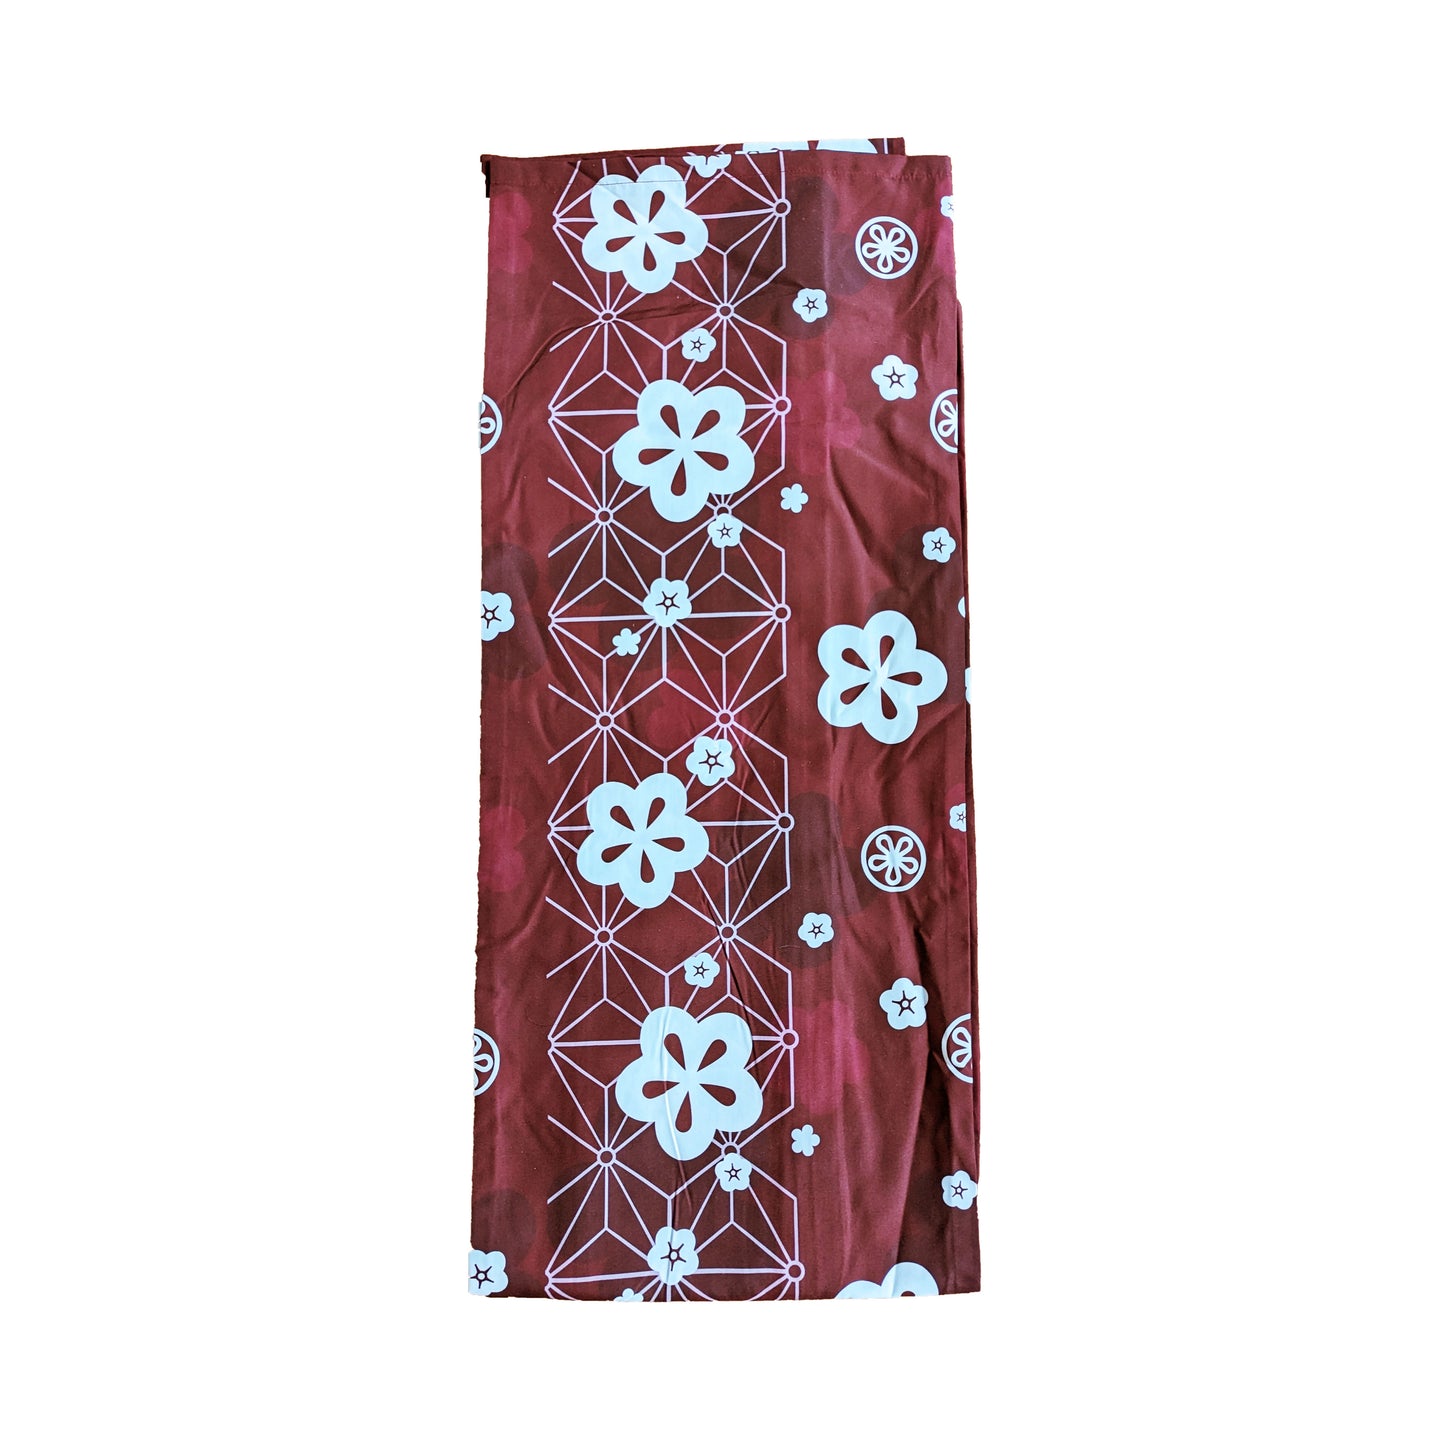 Japanese Yukata Kimono Plus Size - Plum Blossoms in Maroon